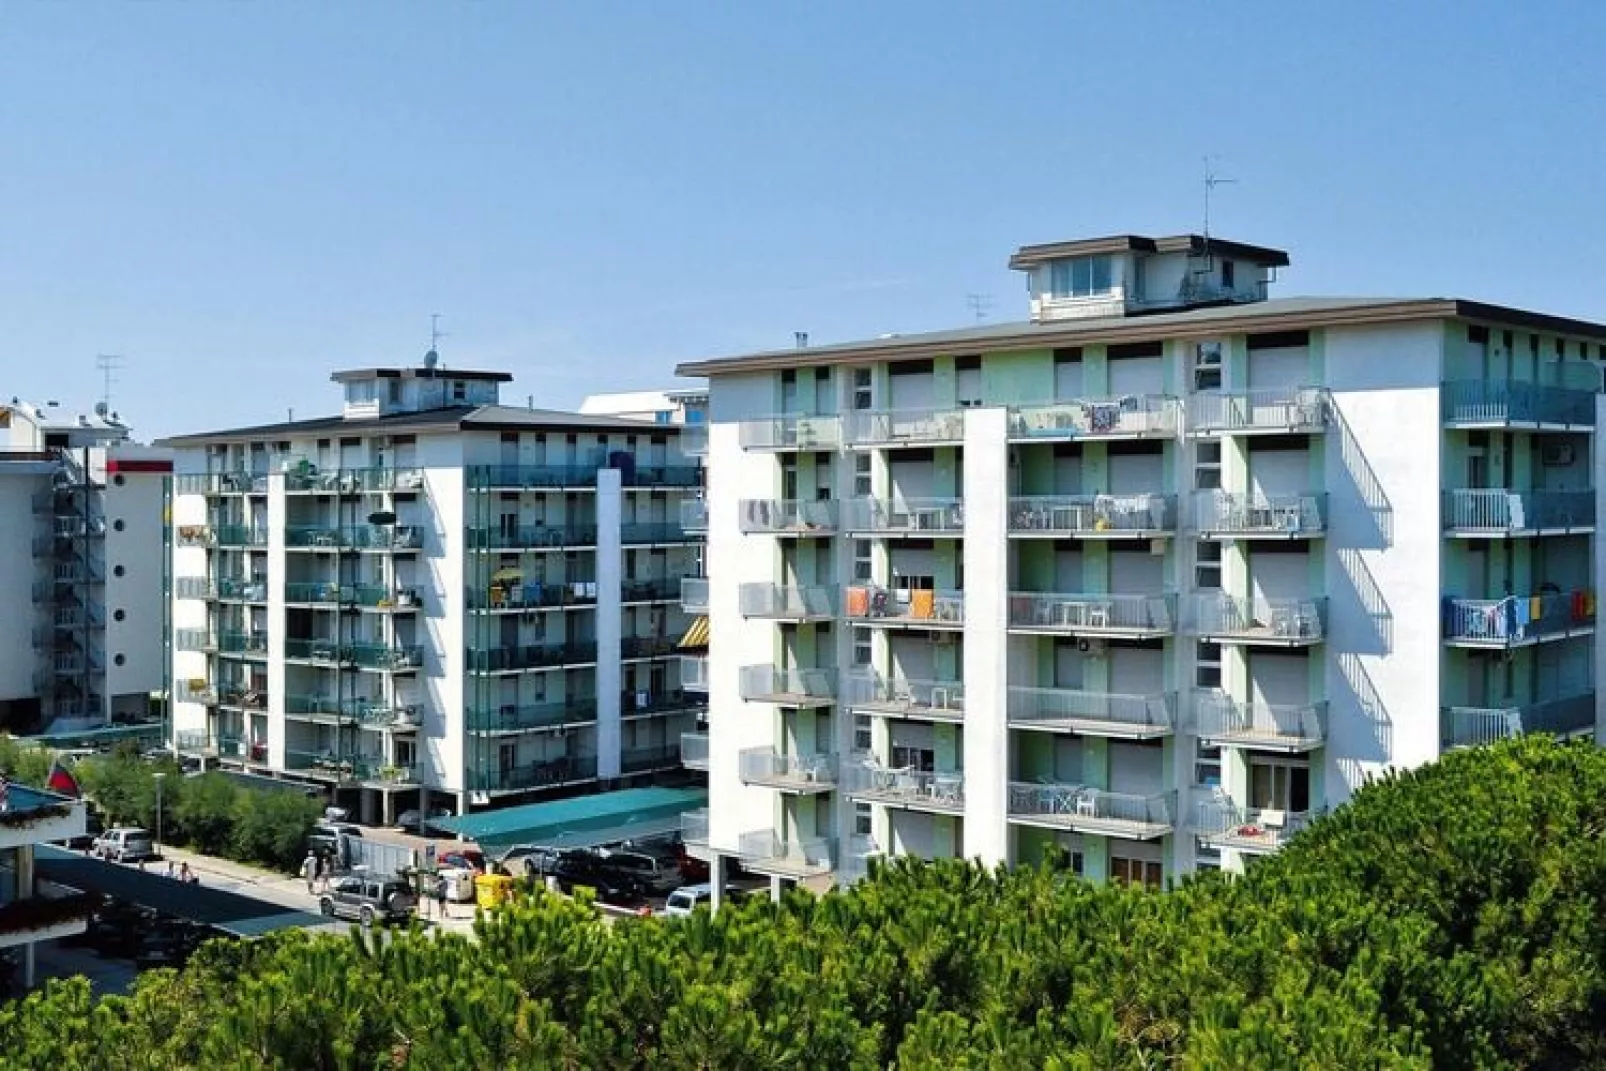 Apartments Smeralda, Bibione Spiaggia-Tipo B-5